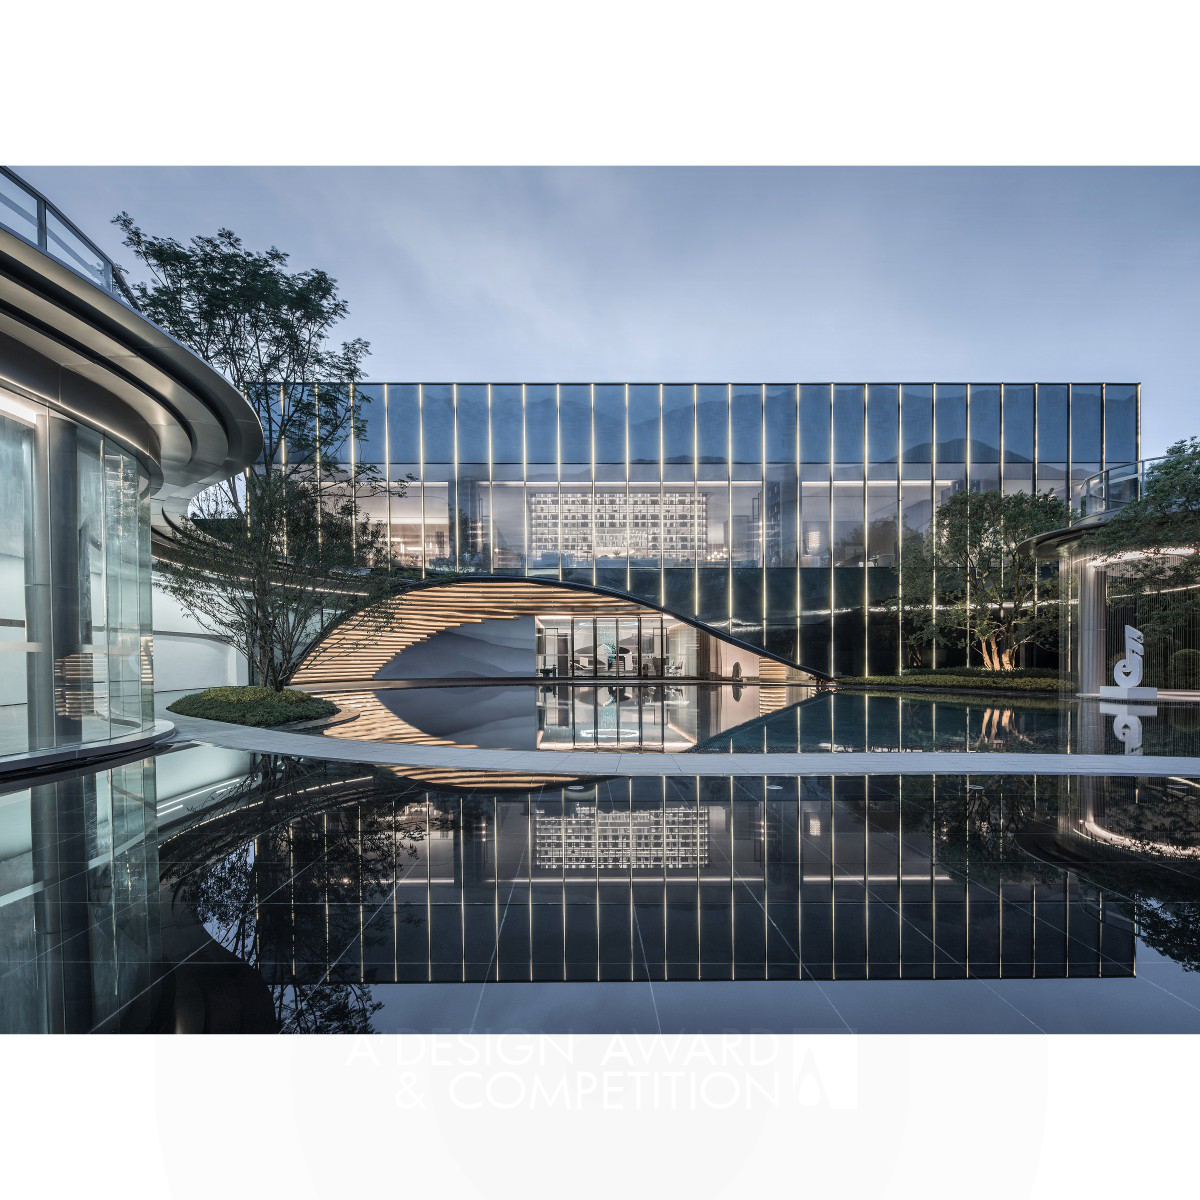 El Centro de Exhibición Nanning Tanjing: Una Armoniosa Integración de Arquitectura y Naturaleza